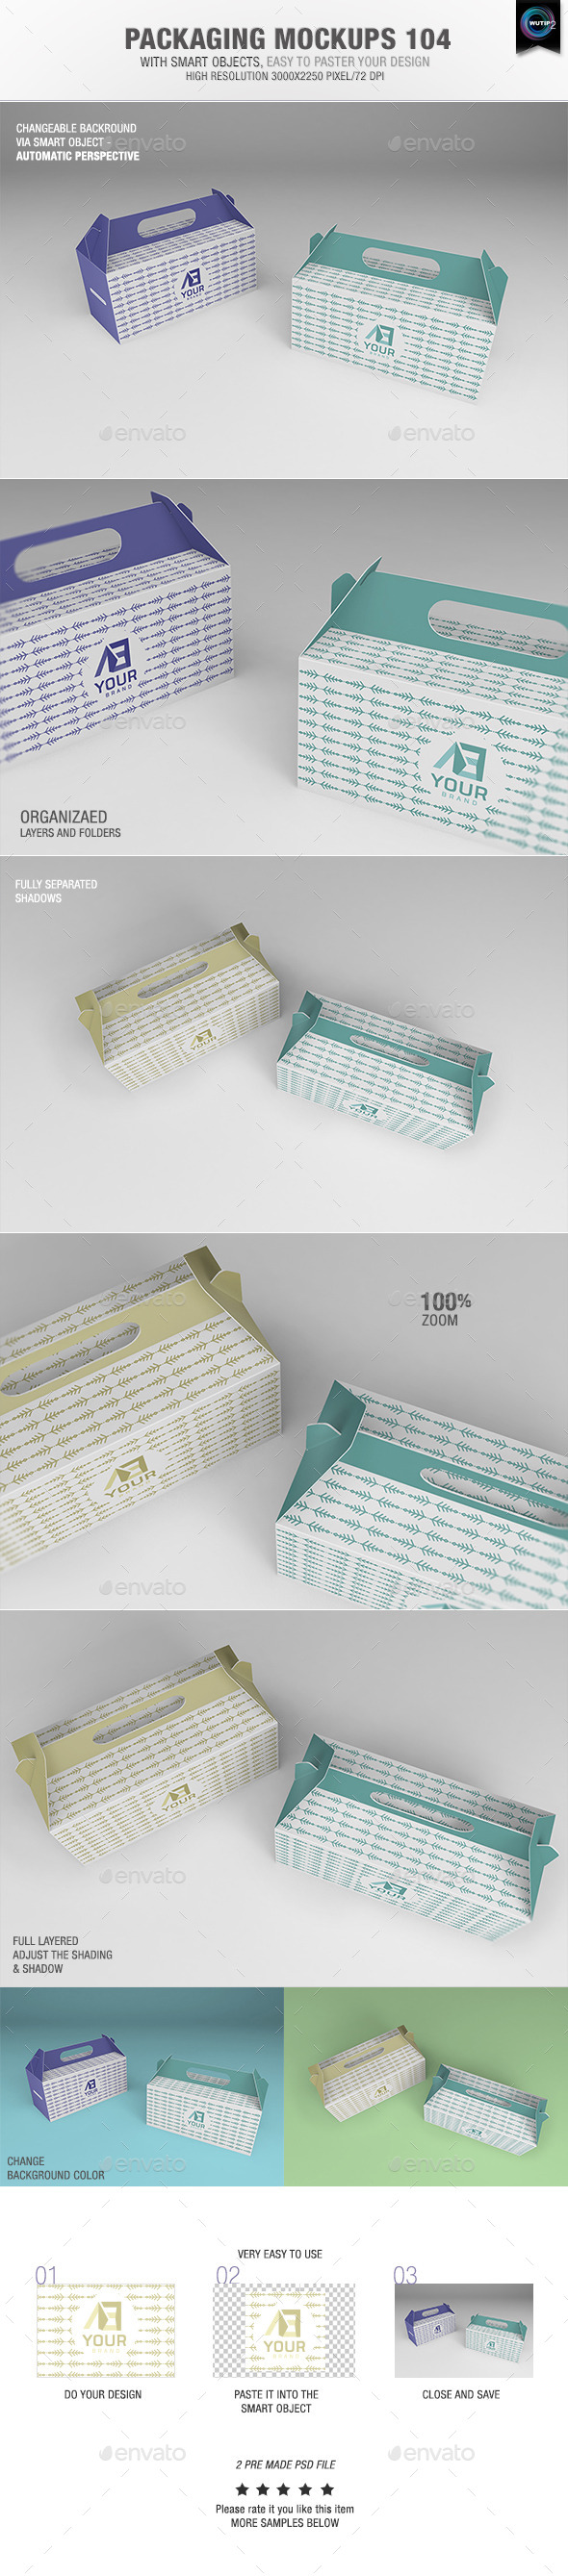 Packaging-Mockups-104-Preview.jpg